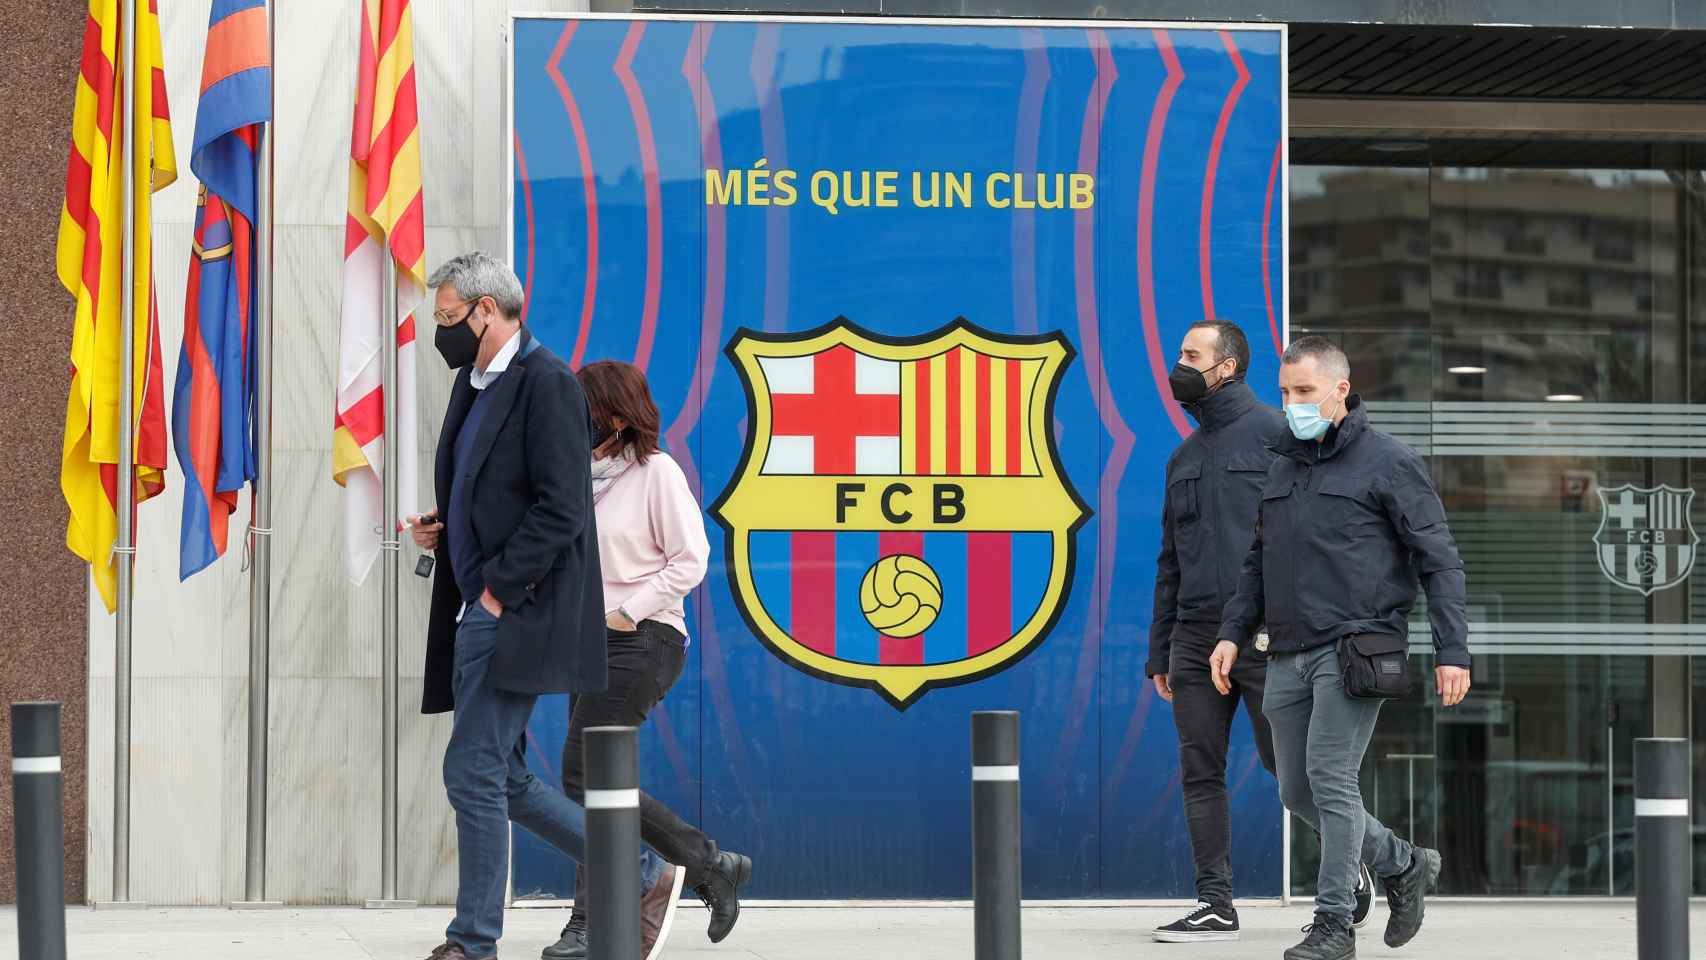 Los agentes de los Mossos d'Escuadra, en las oficinas del Barça del Camp Nou en el marco de la investigación por el 'Barçagate'